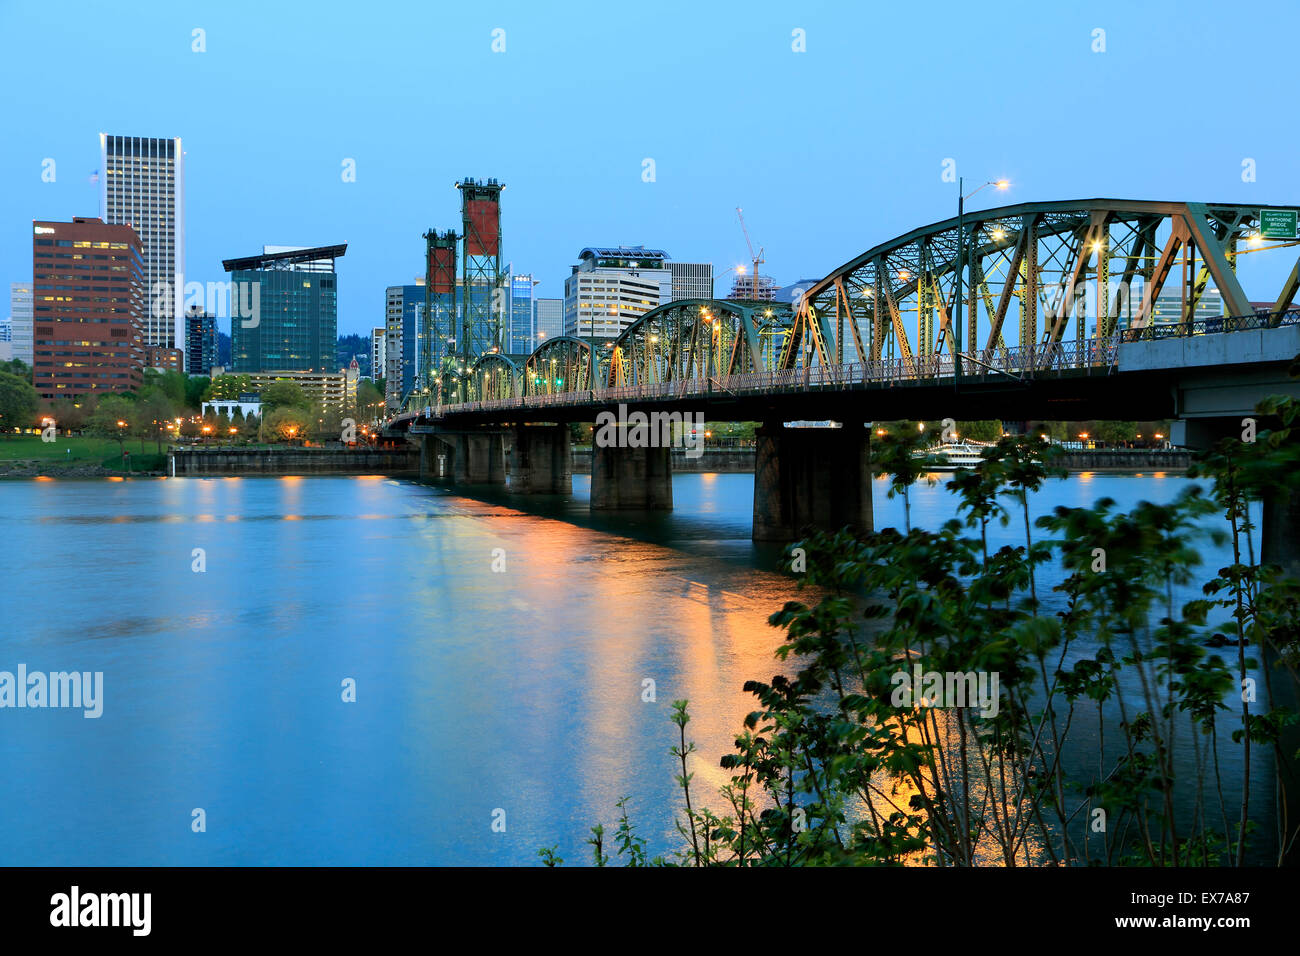 Horizonte de Portland, Hawthorne y puente del río Willamette en Portland, Oregón, EE.UU. Foto de stock